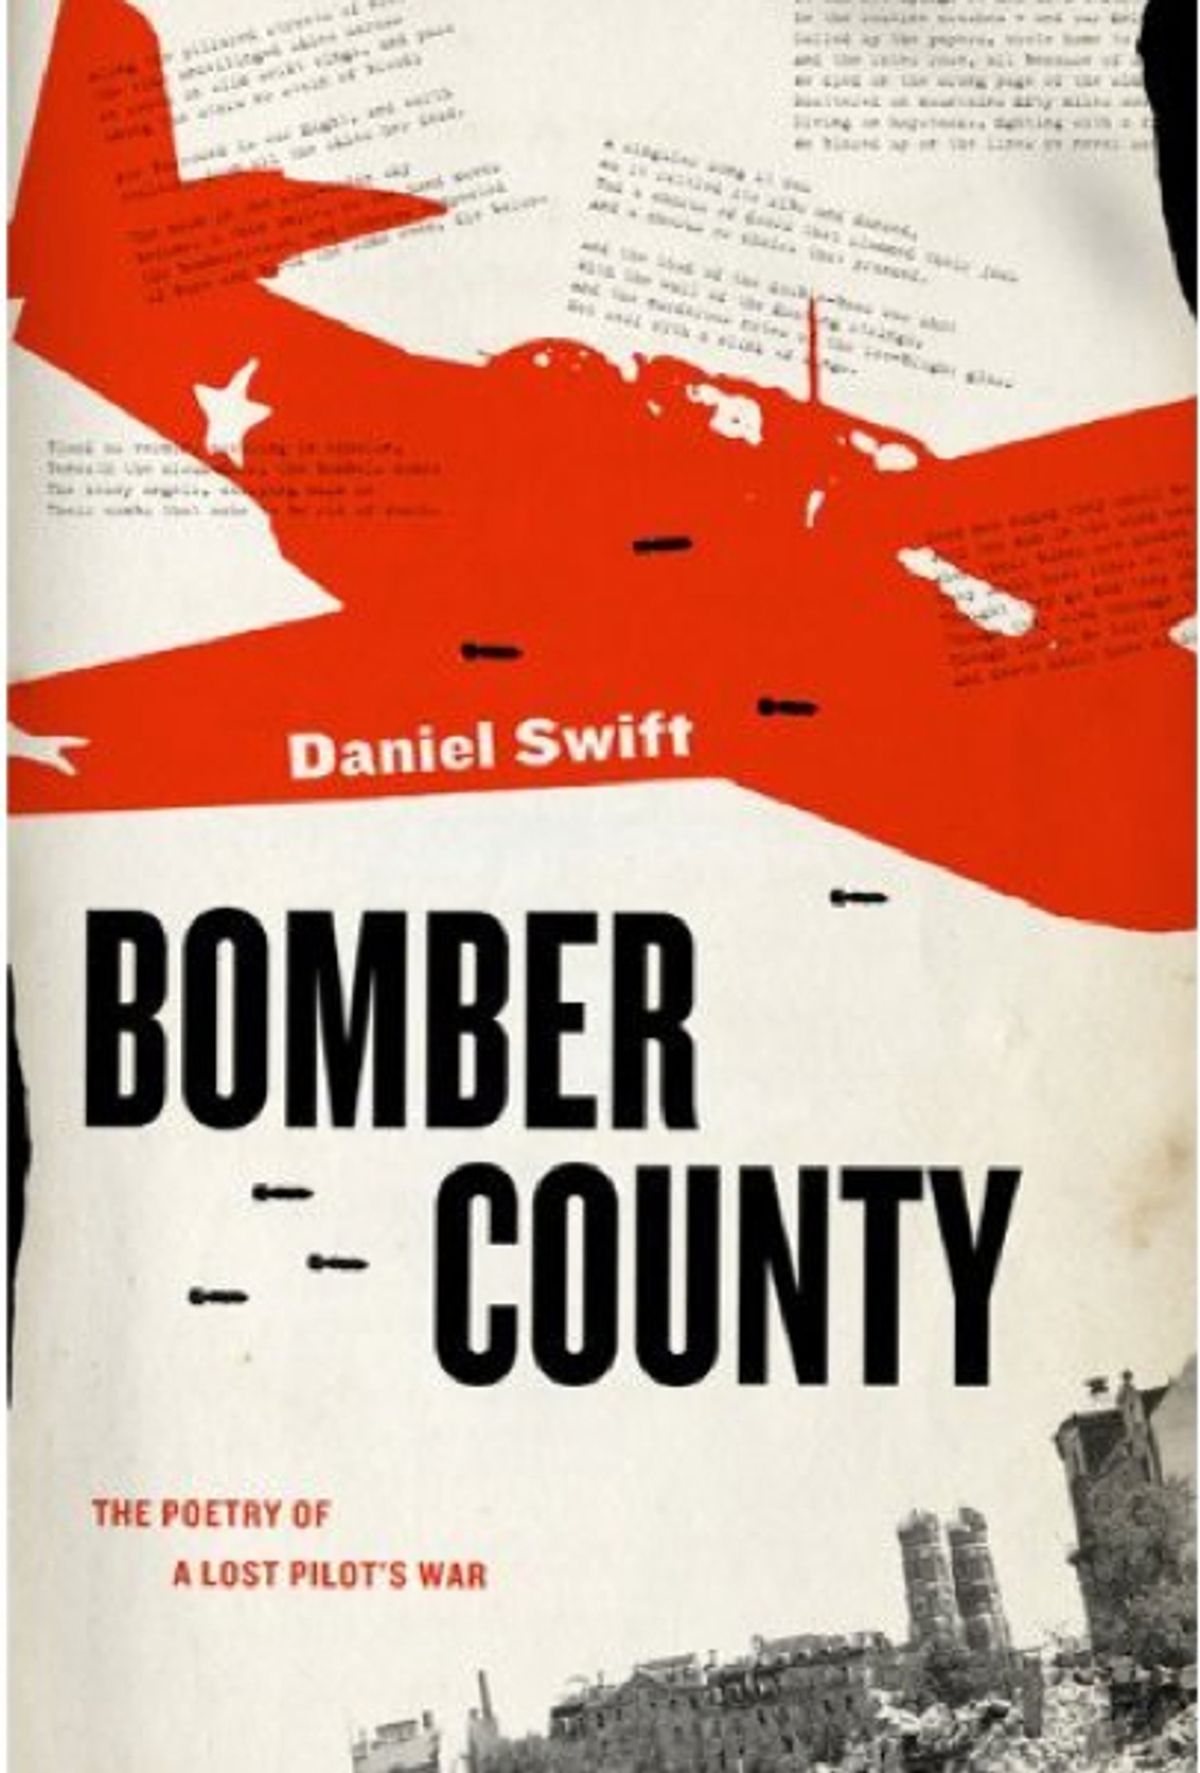 "Bomber County" by Daniel Swift